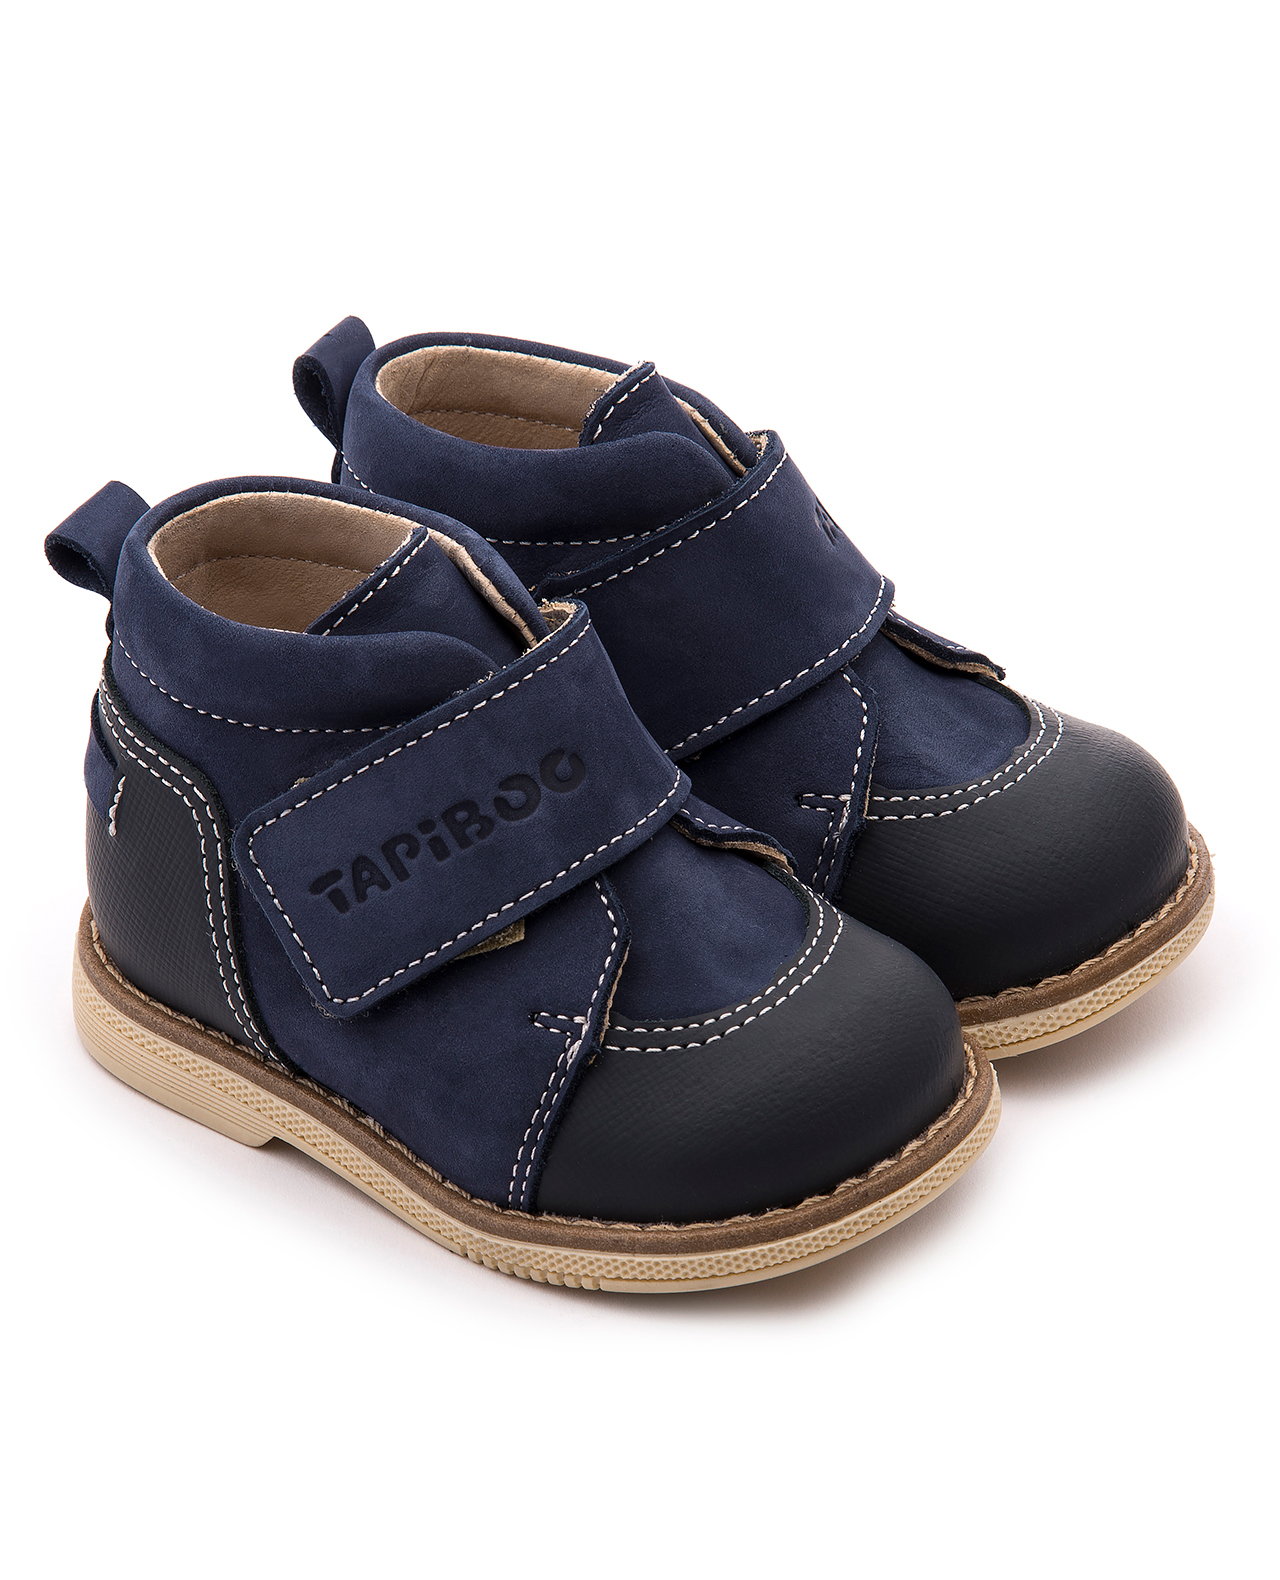 Ботинки Tapiboo FT-24015.18-OL08O.01 цв.тёмно-синий р.25 tapiboo ботинки чечётка 24015